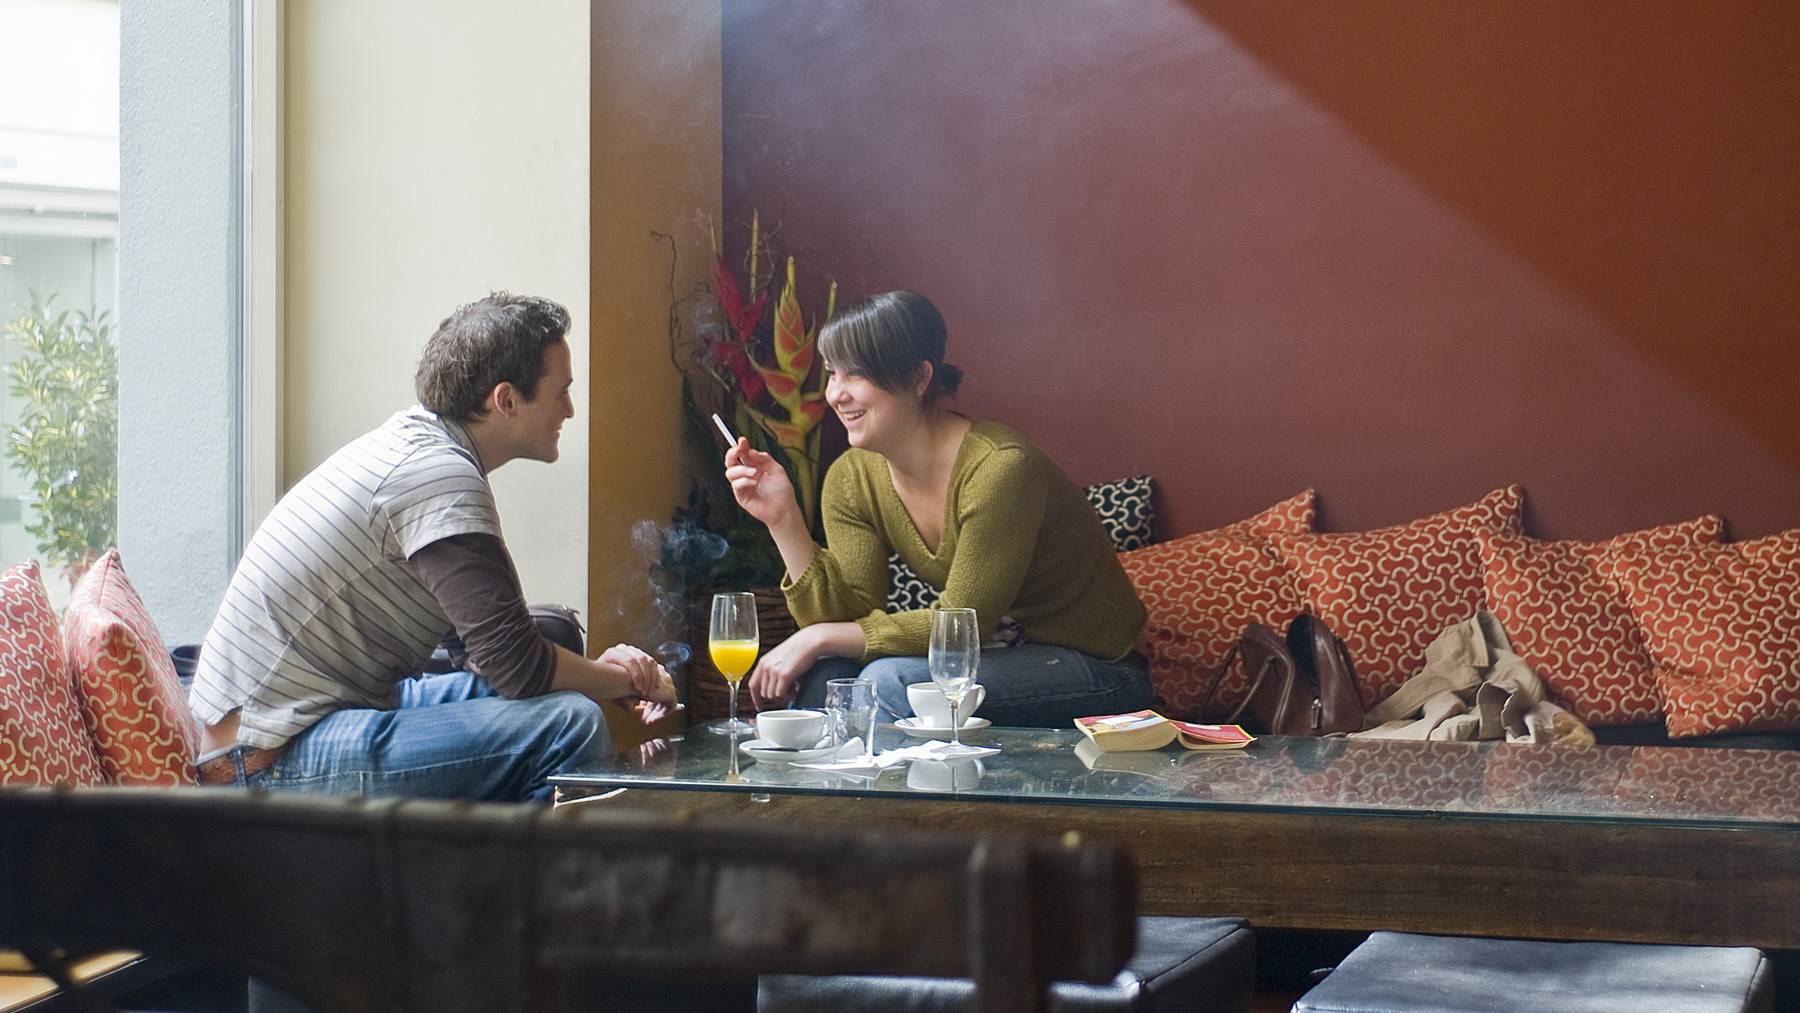 Rauchen // Flirten // Dating // Zigarette // Zwei junge Menschen rauchen in einer Bar in Zuerich, aufgenommen am 7. Maerz 2009